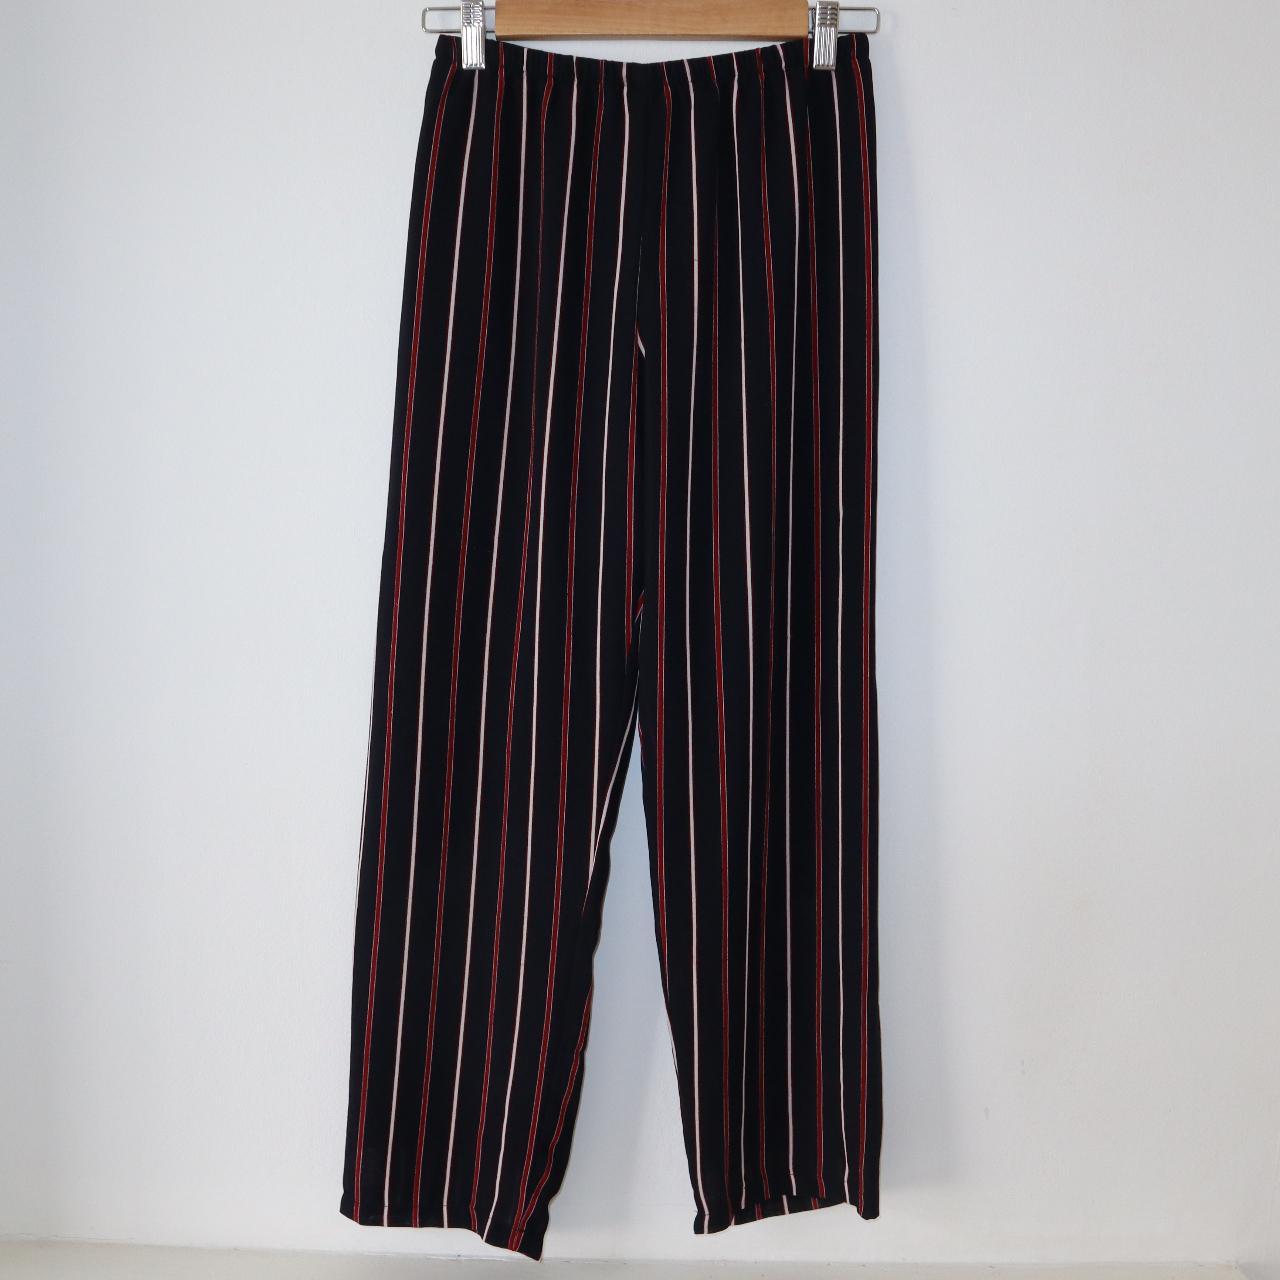 Brandy Melville pinstripe floaty trousers, size... - Depop